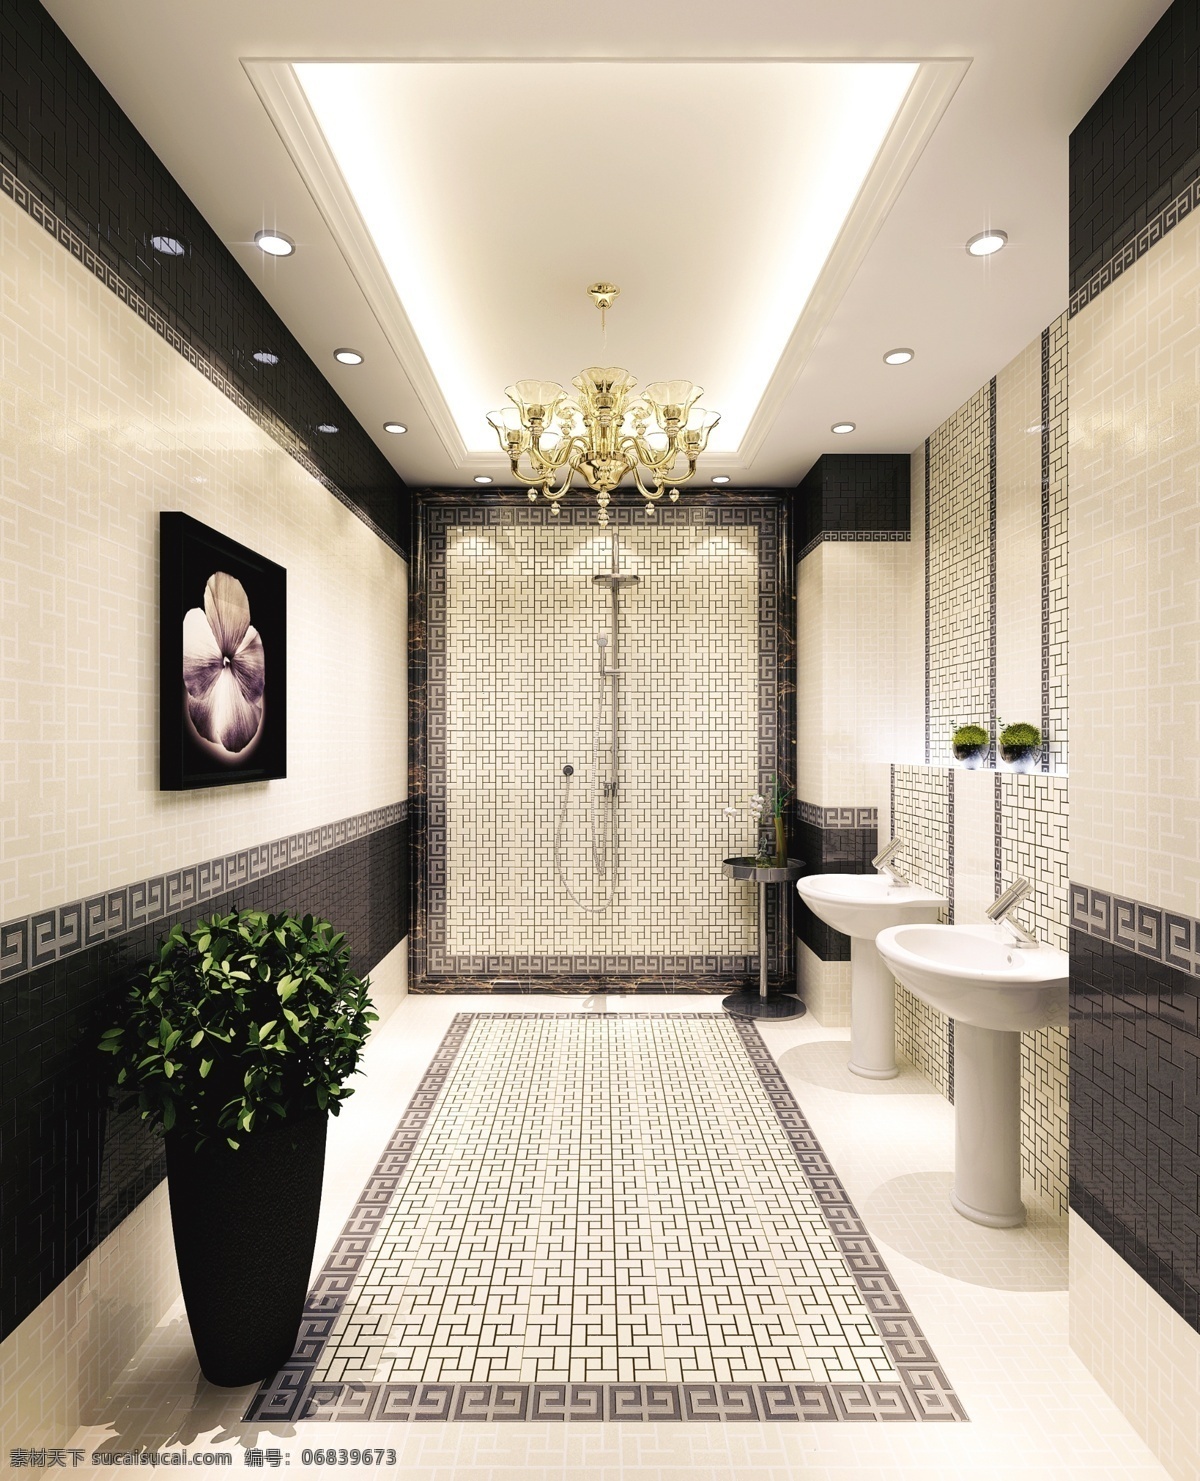 瓷片 环境设计 室内设计 卫浴 洗手间 空间 设计素材 模板下载 瓷片卫浴空间 冲凉房 家居装饰素材